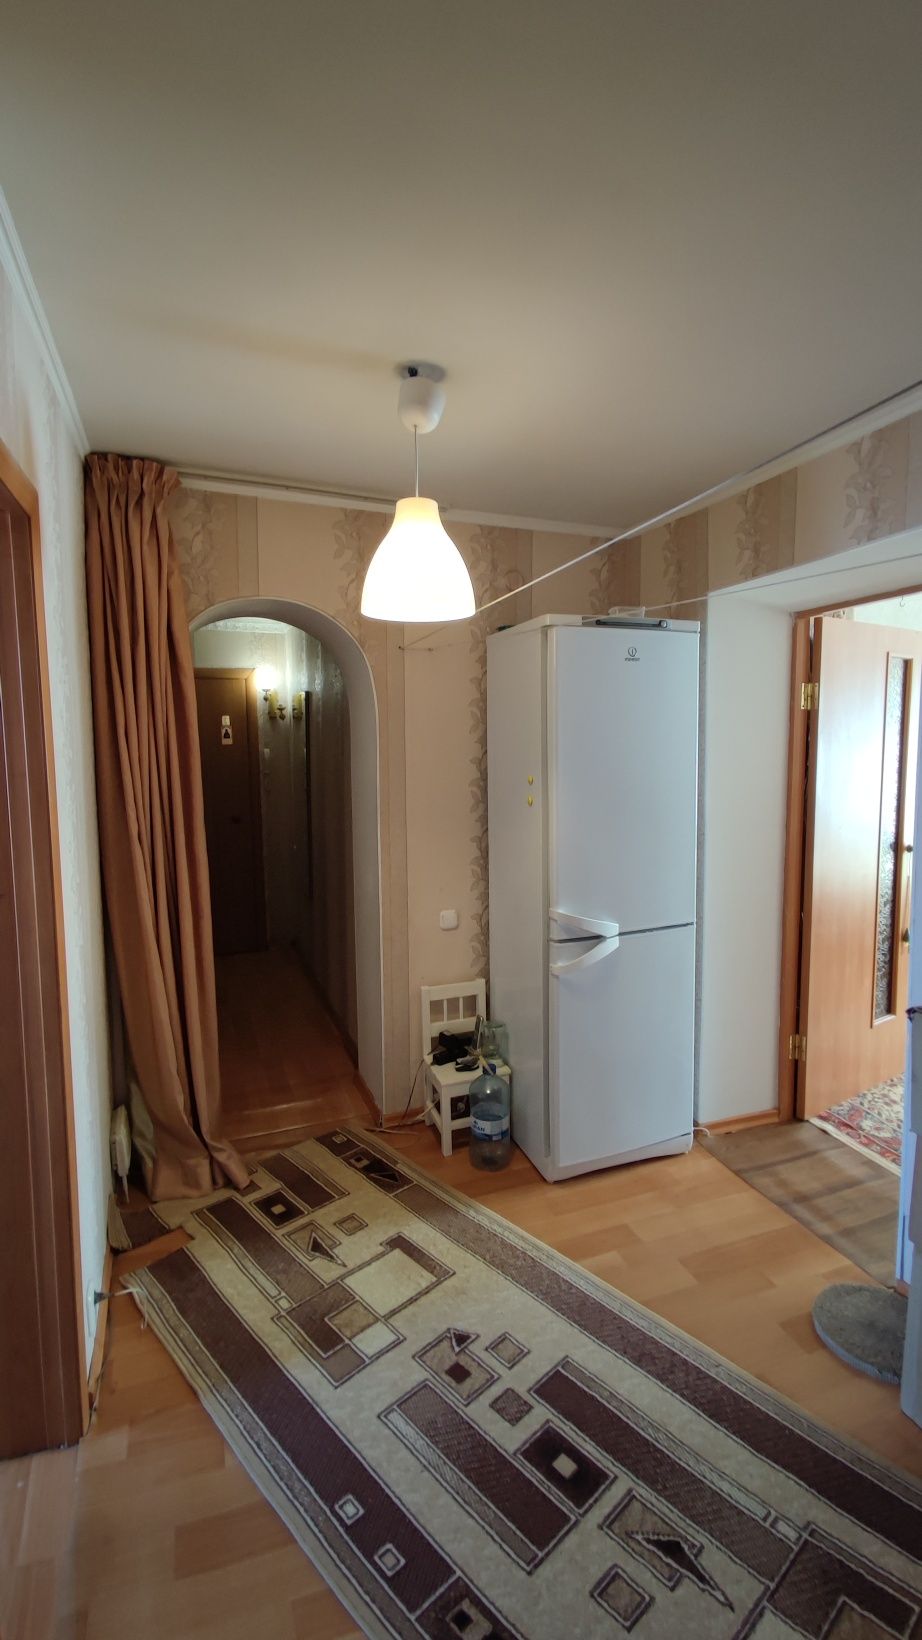 Продам 3 комнатную квартиру новой планировки, кирпич, Кзахтелеком.